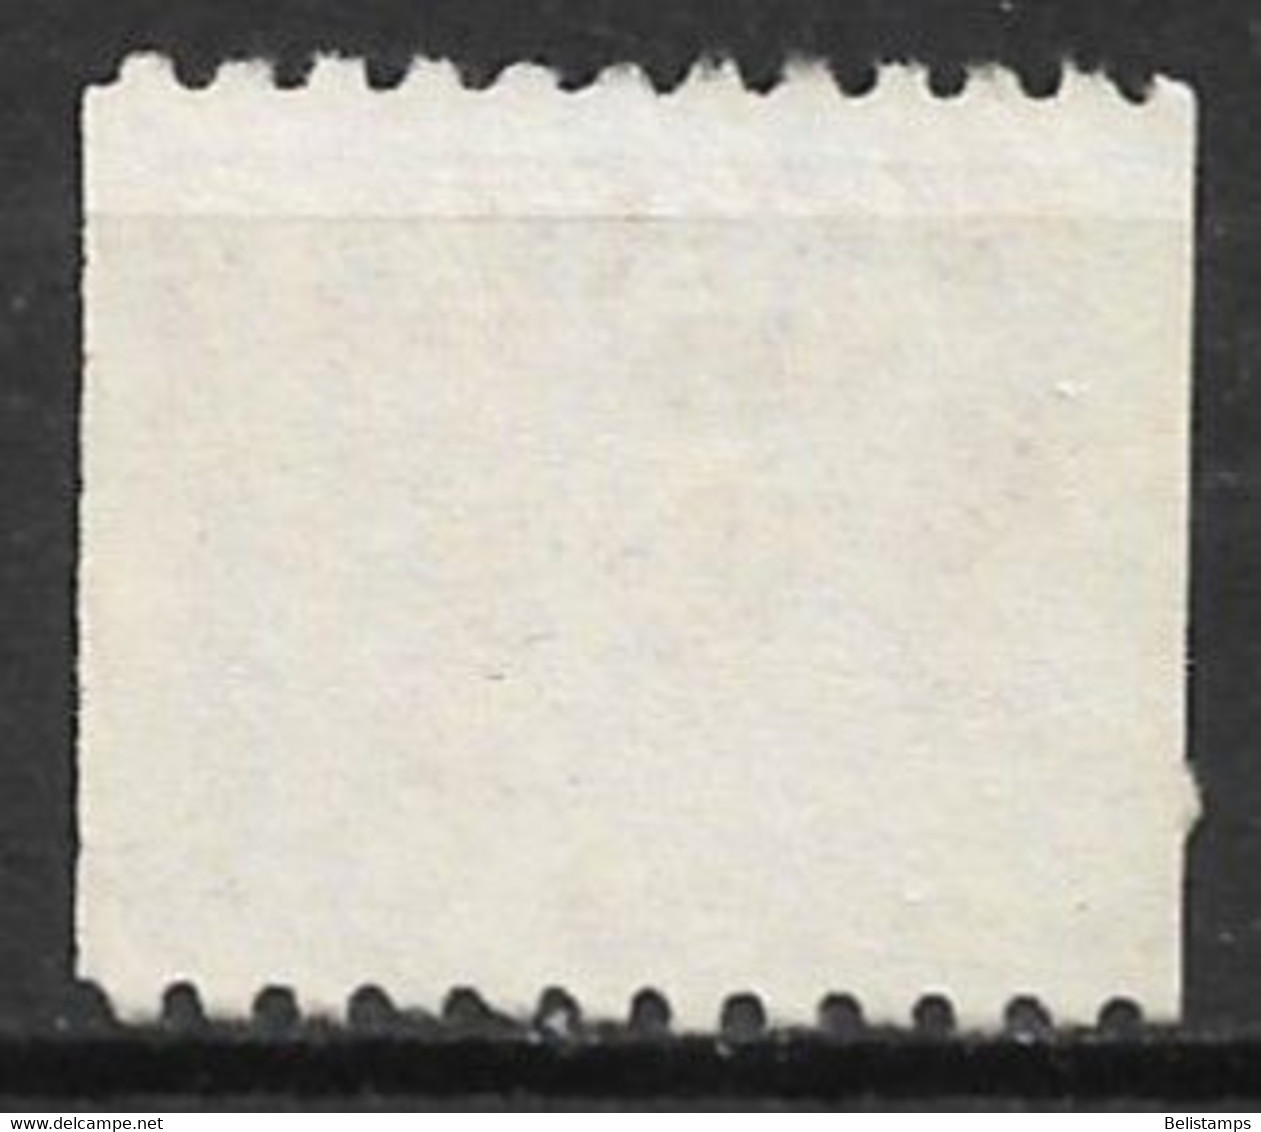 Canada 1991. Scott #1394 (U) Flag - Coil Stamps